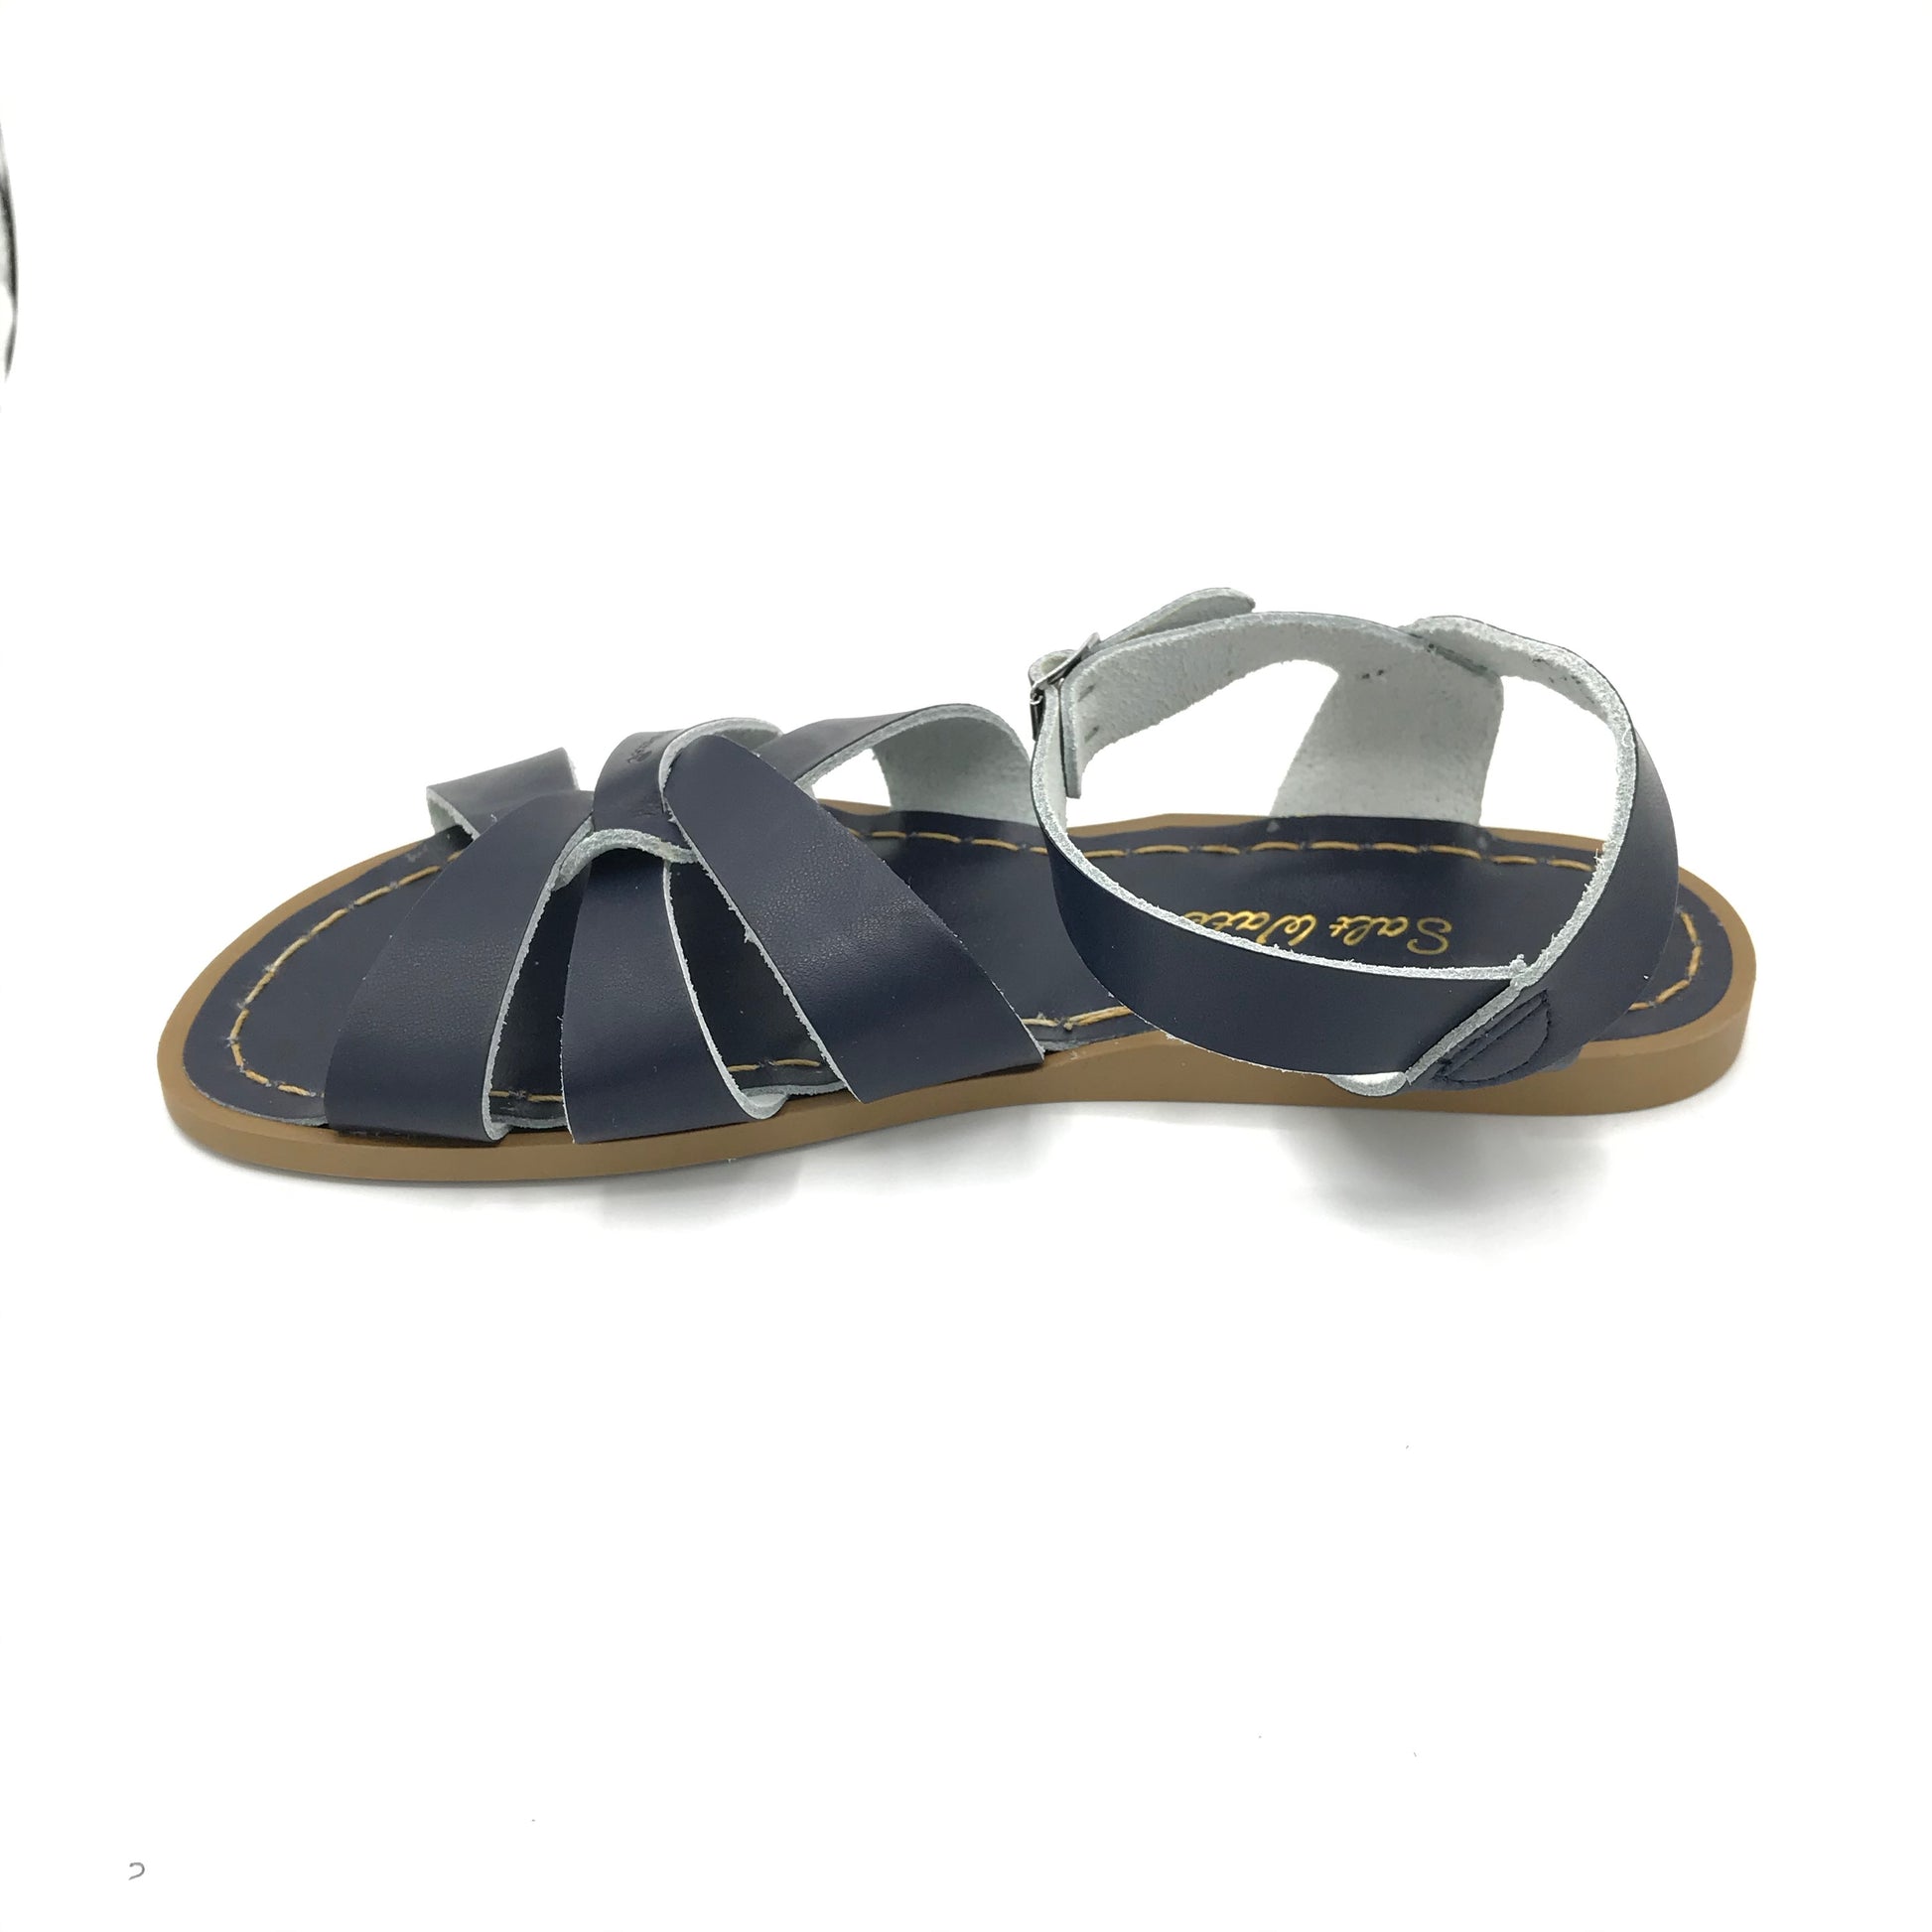 Navy Original Sandals - Imeldas Shoes Norwich